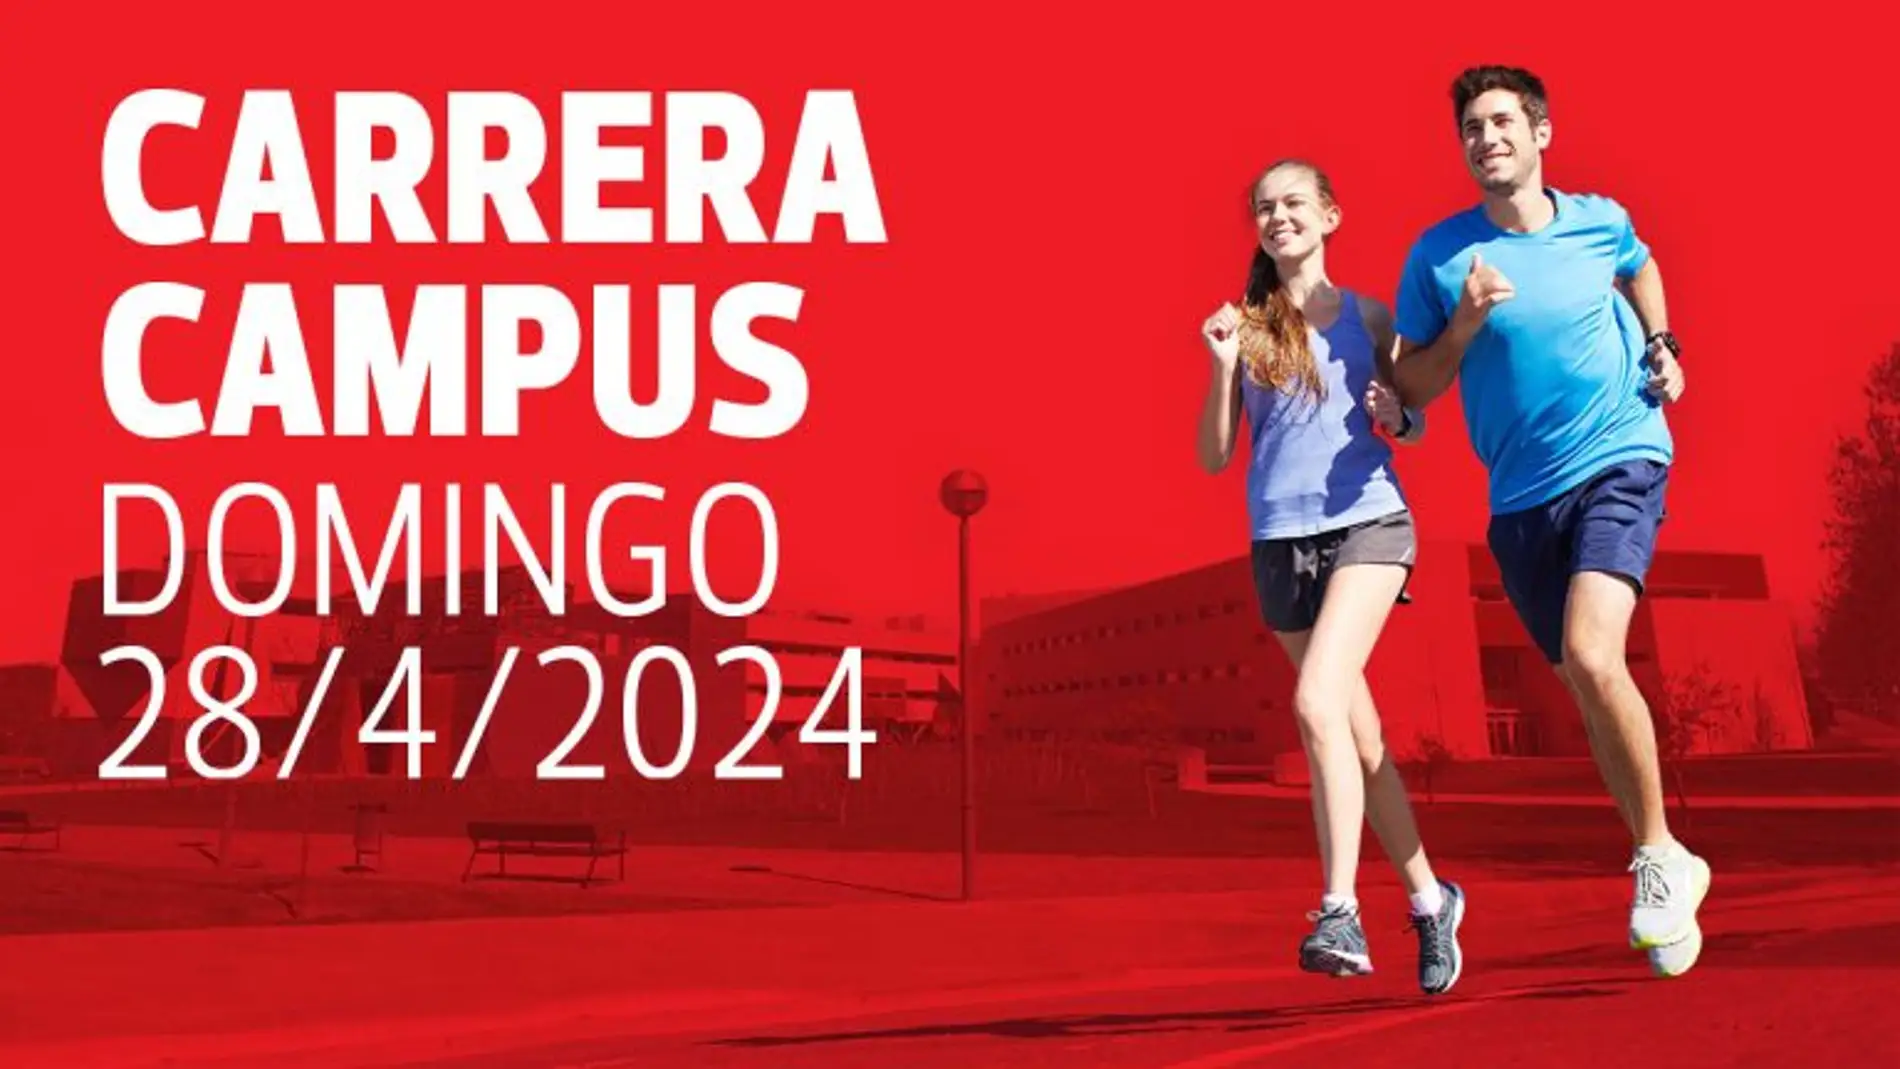 La Universidad de La Rioja convoca a estudiantes preuniversitarios, universitarios y corredores populares